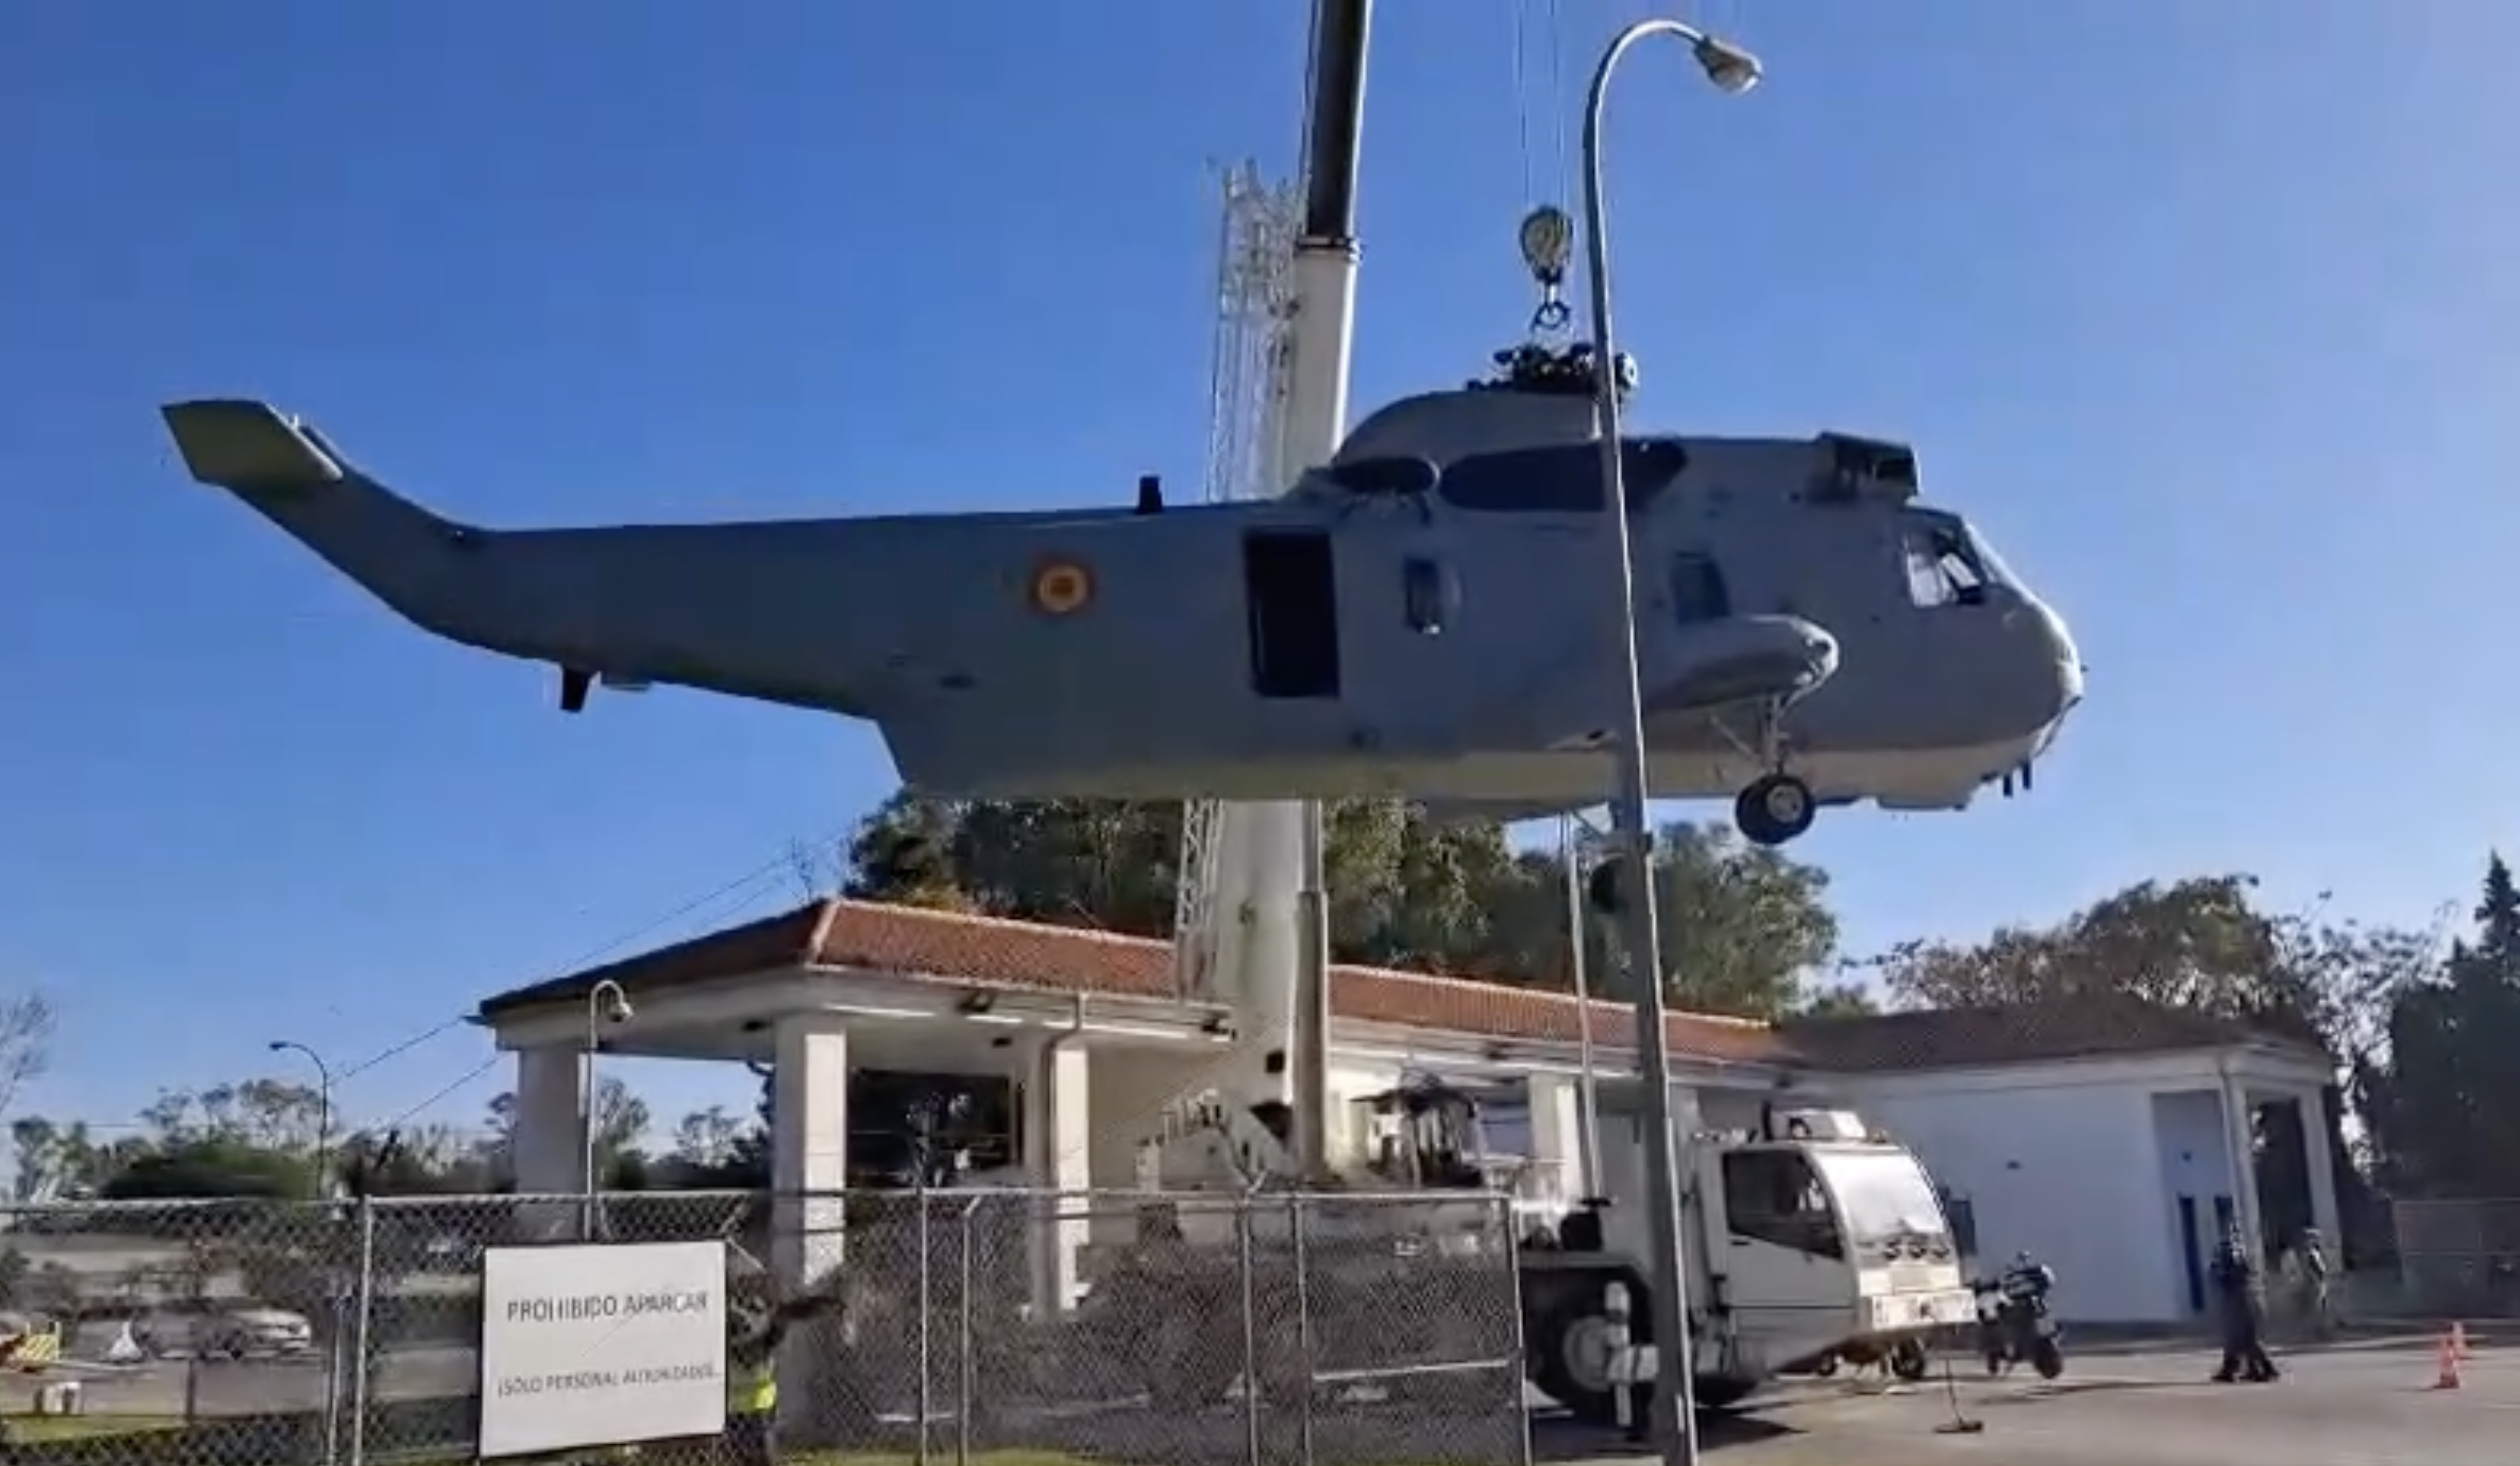 Helicóptero modelo SH 3d de la Armada que ha sido trasladado al Centro Multicultural Base Fórum en Rota.